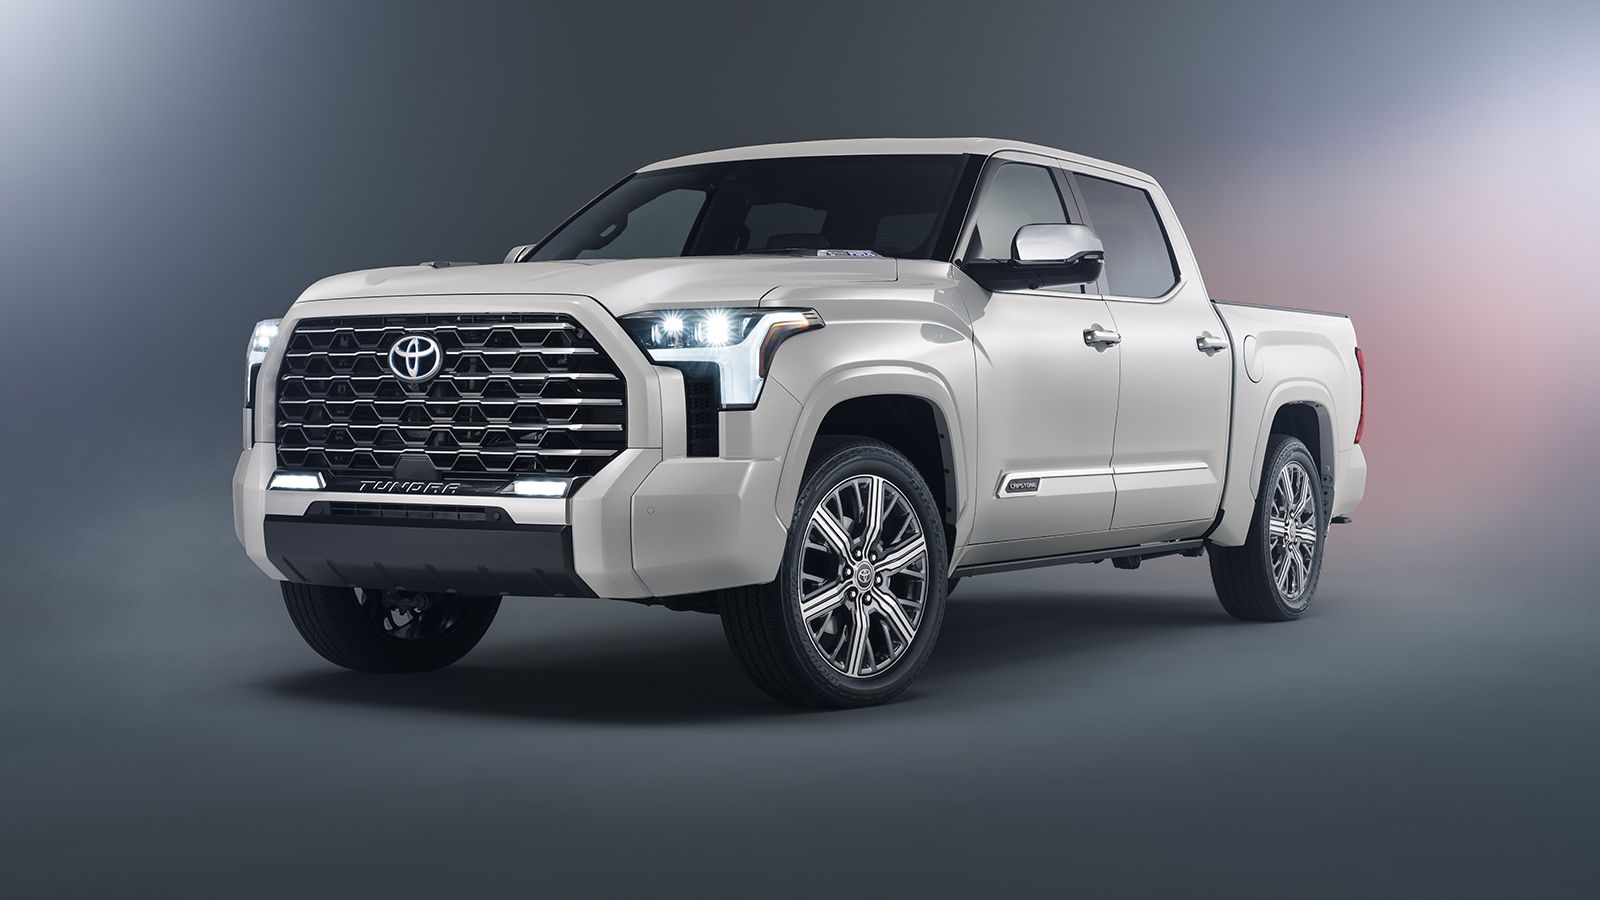 Το ολοκαίνουργιο Tundra Capstone τοποθετείται στην κορυφή της γκάμας του νέου αμερικάνικου Pick-Up της Toyota.